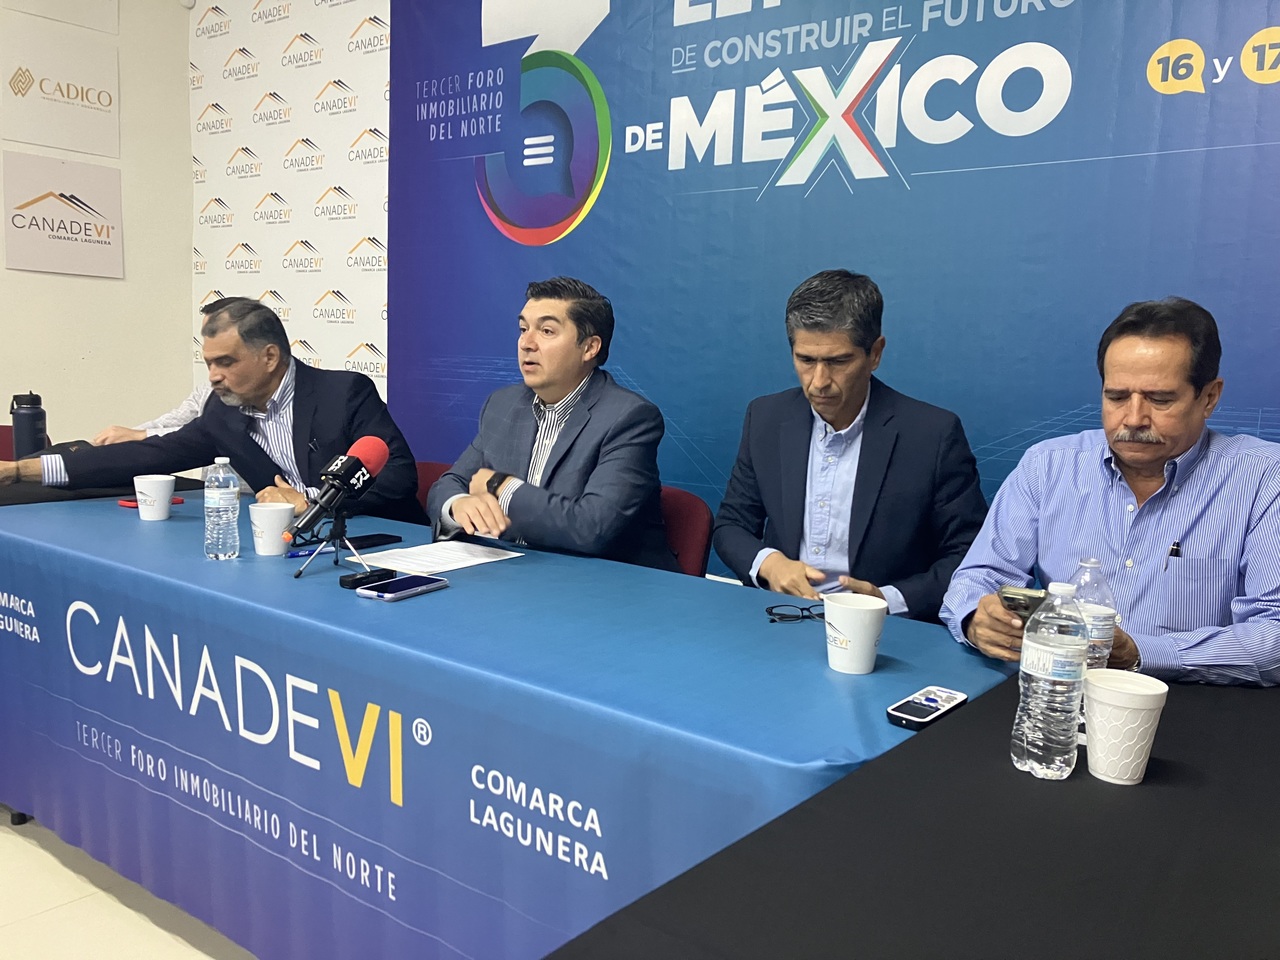 Va Canadevi Laguna por la tercera edición del Foro Inmobiliario del Norte con el lema 'El Poder de Construir el Futuro de México'.